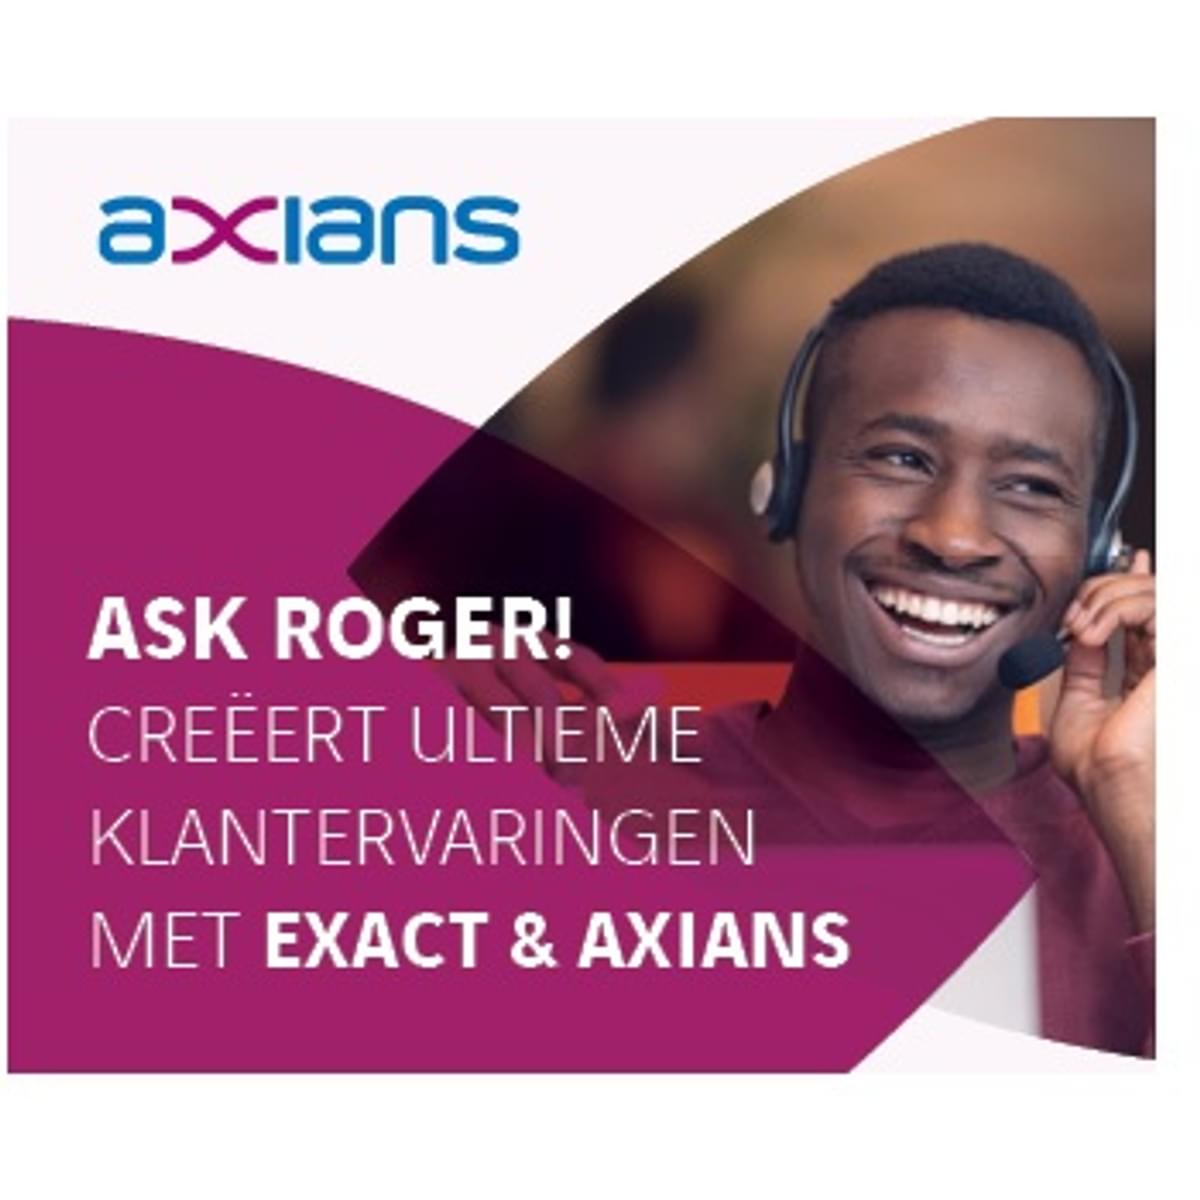 Ask Roger! creëert ultieme klantervaringen samen met Axians image